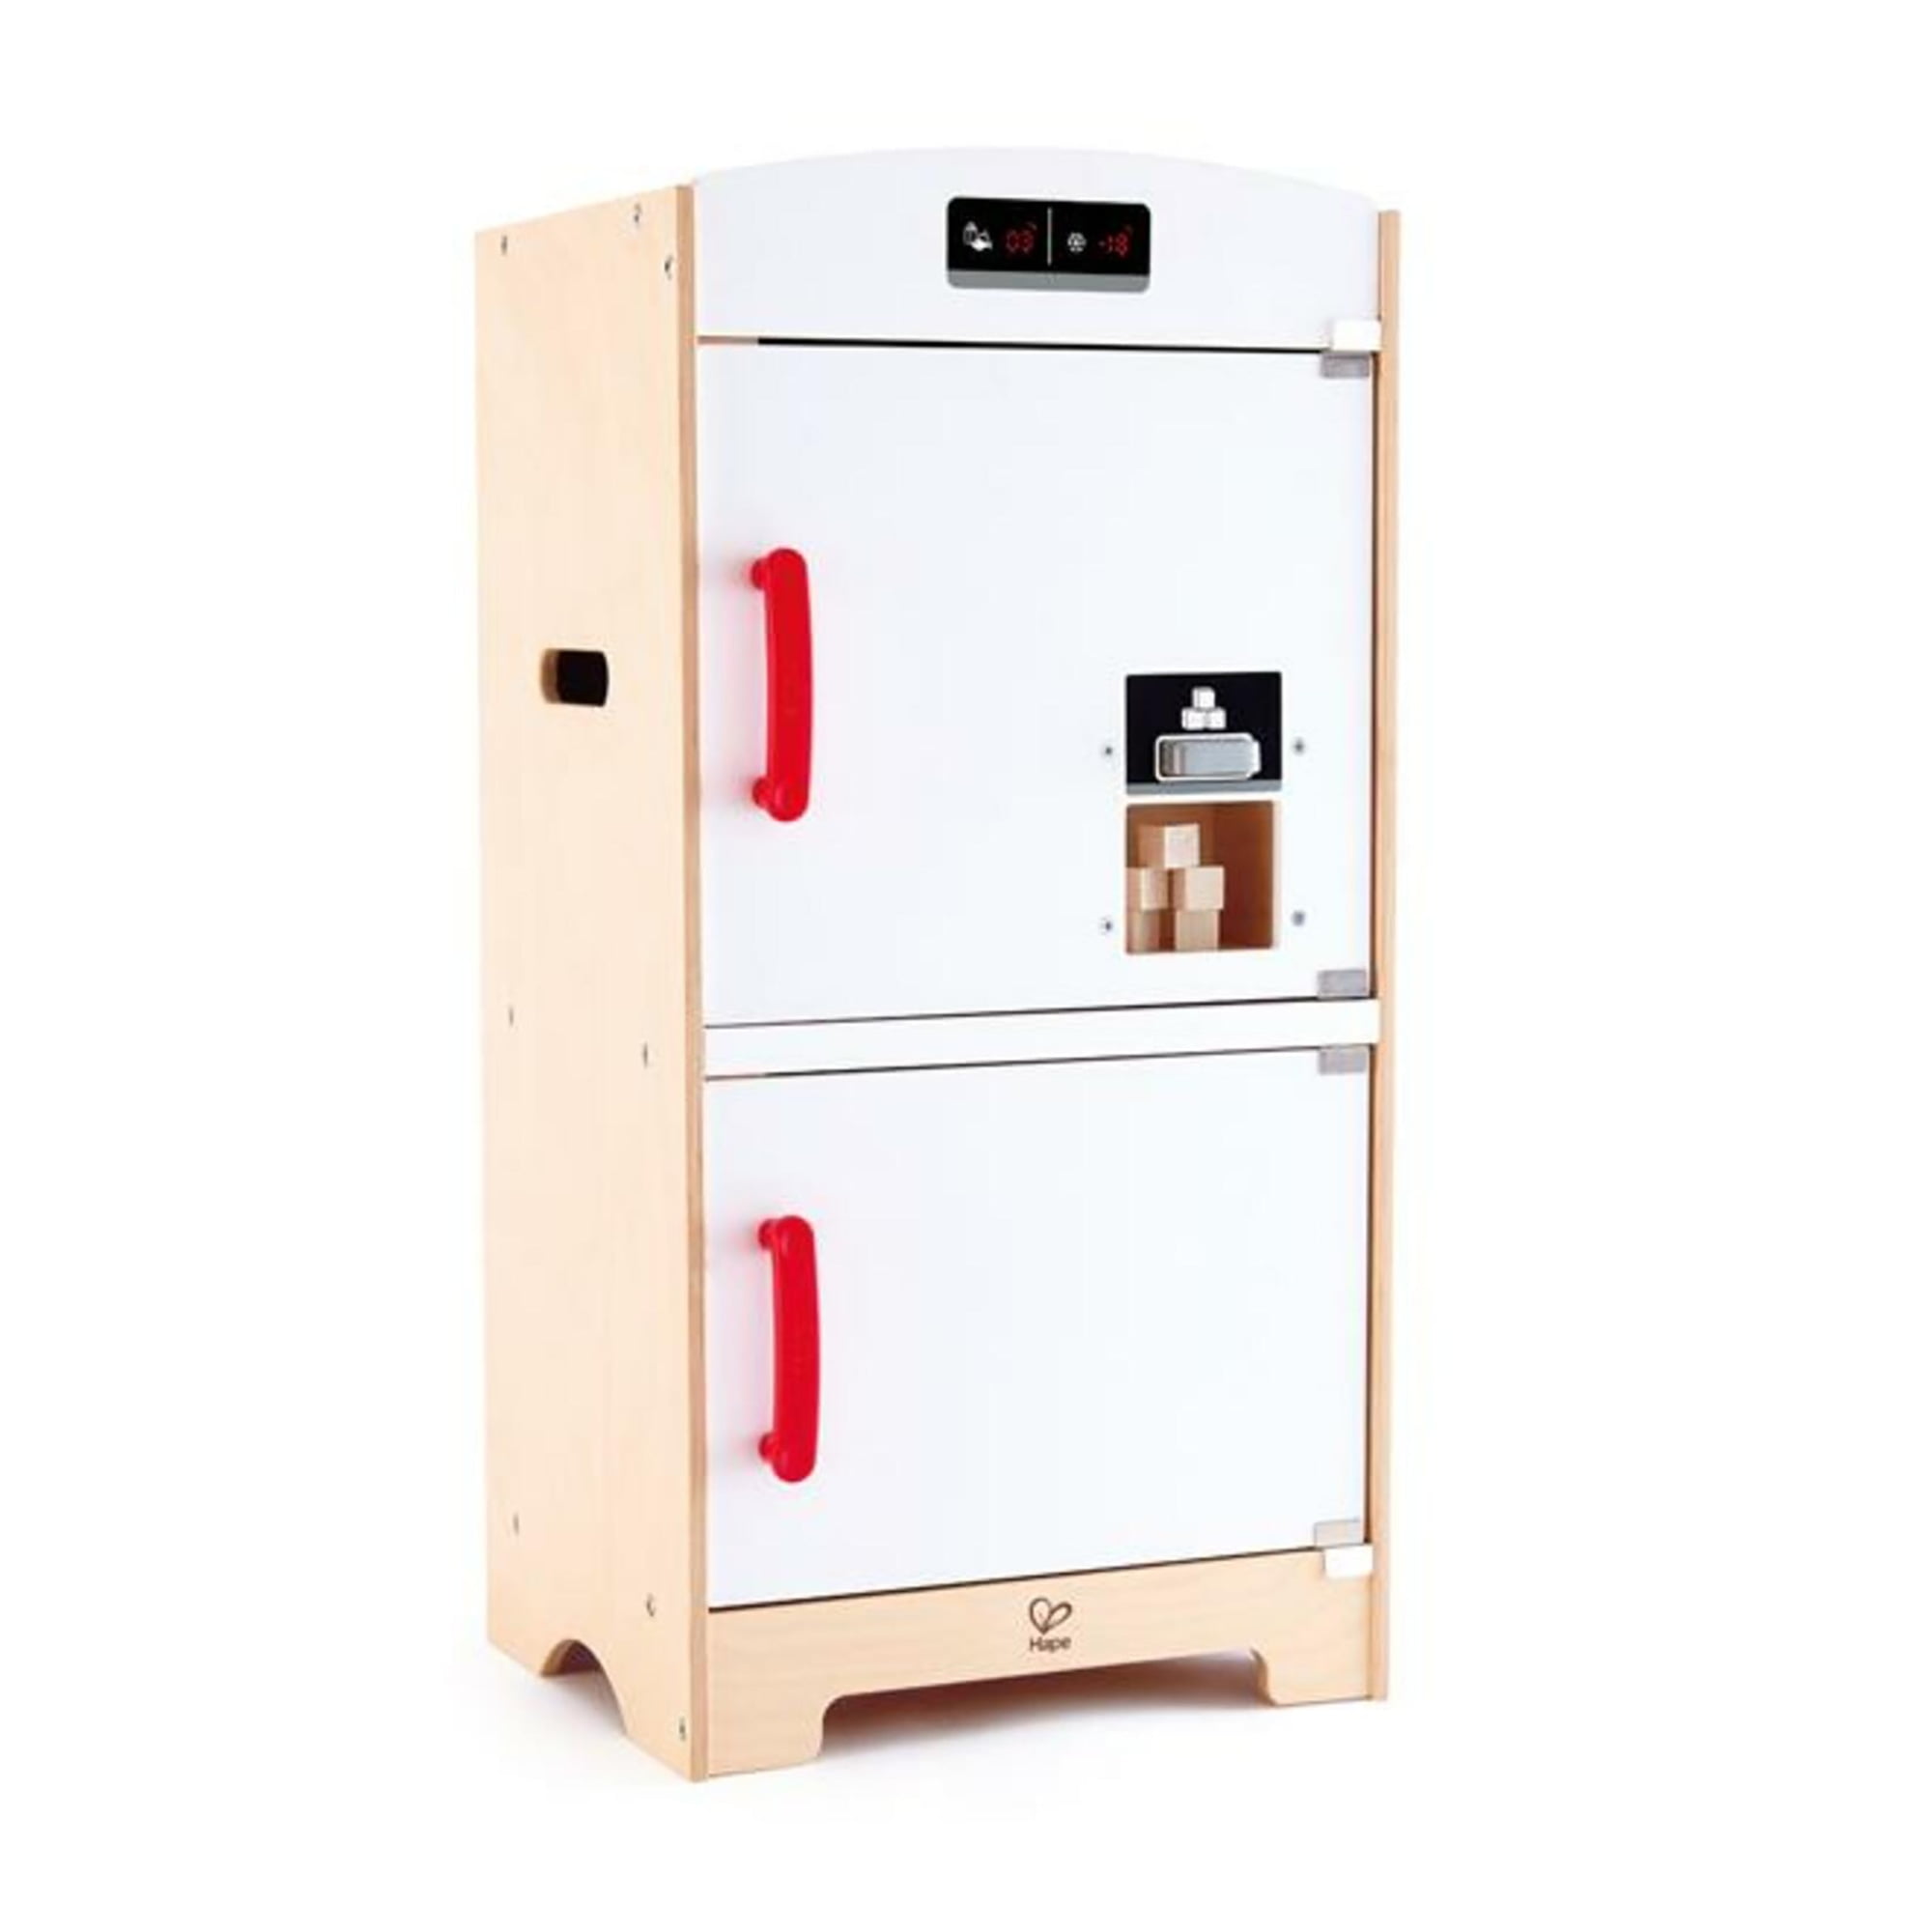  Dollhouse Wooden White Fridge Freezer with Drawer Miniature  Kitchen Furniture : Toys & Games